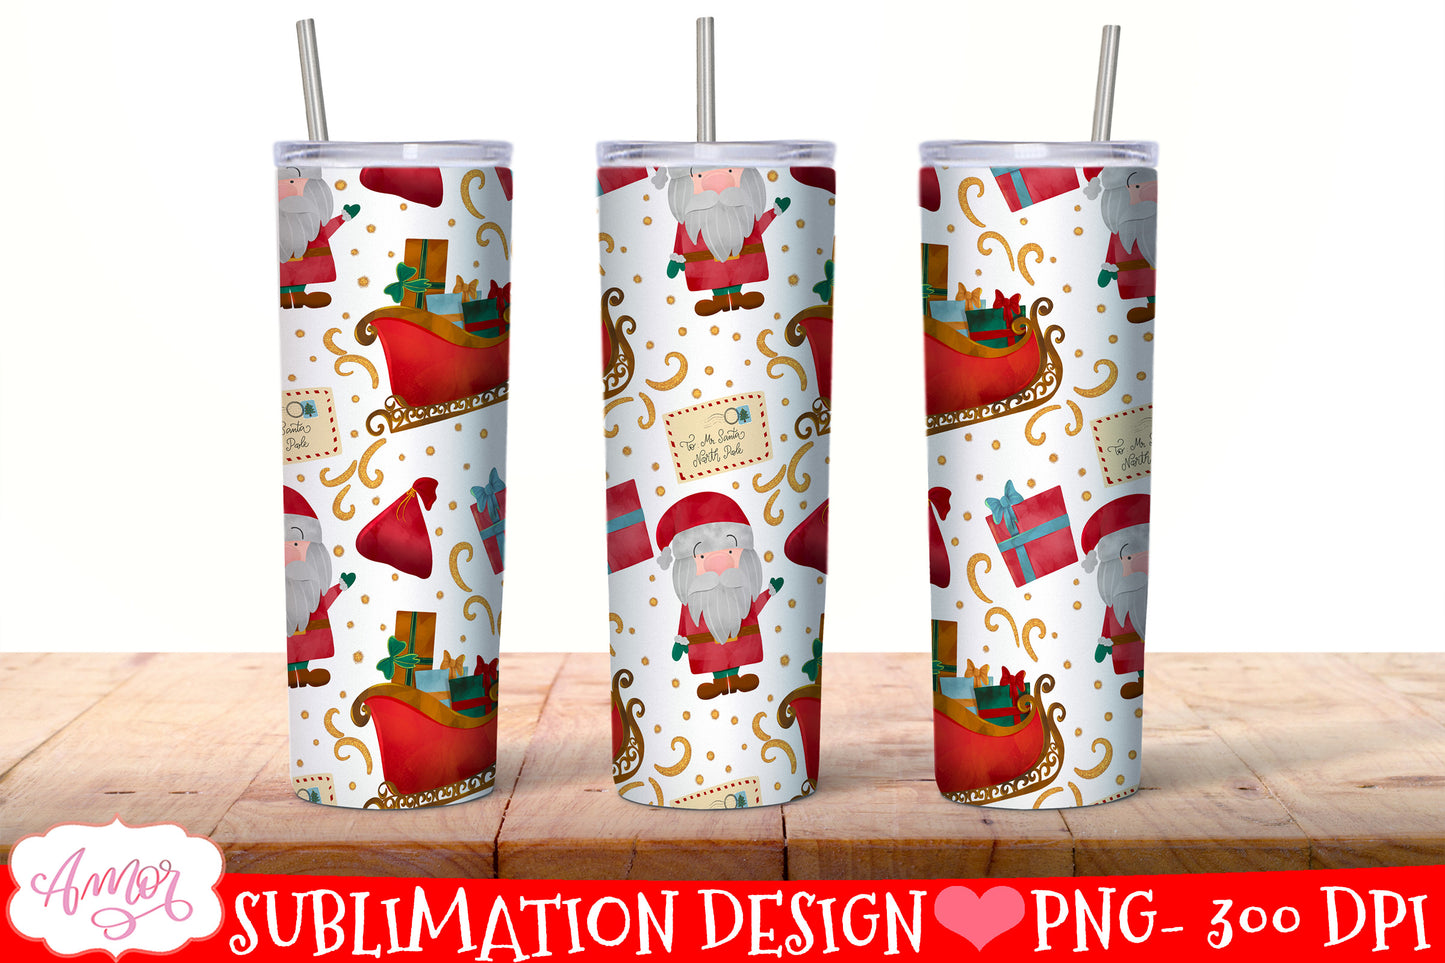 BUNDLE Christmas tumbler wrap for sublimation, 12 PNG